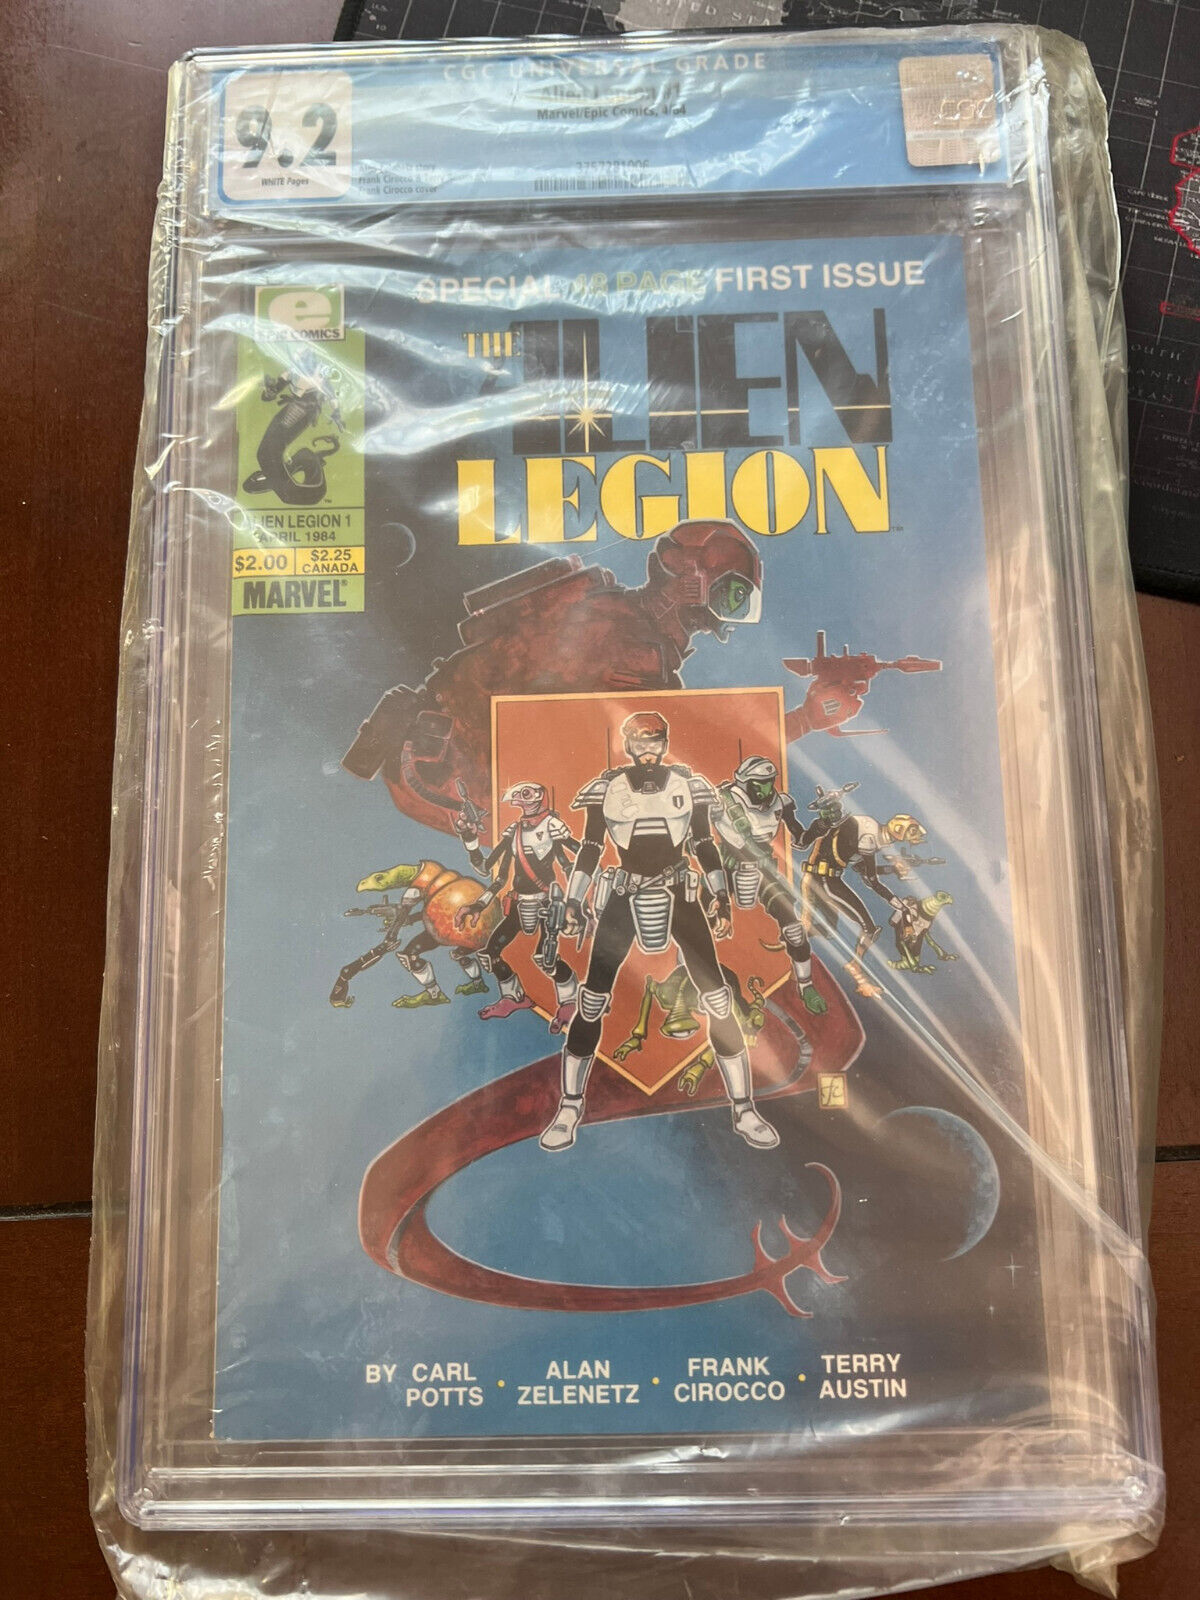 Alien Legion #1 CGC 9.2